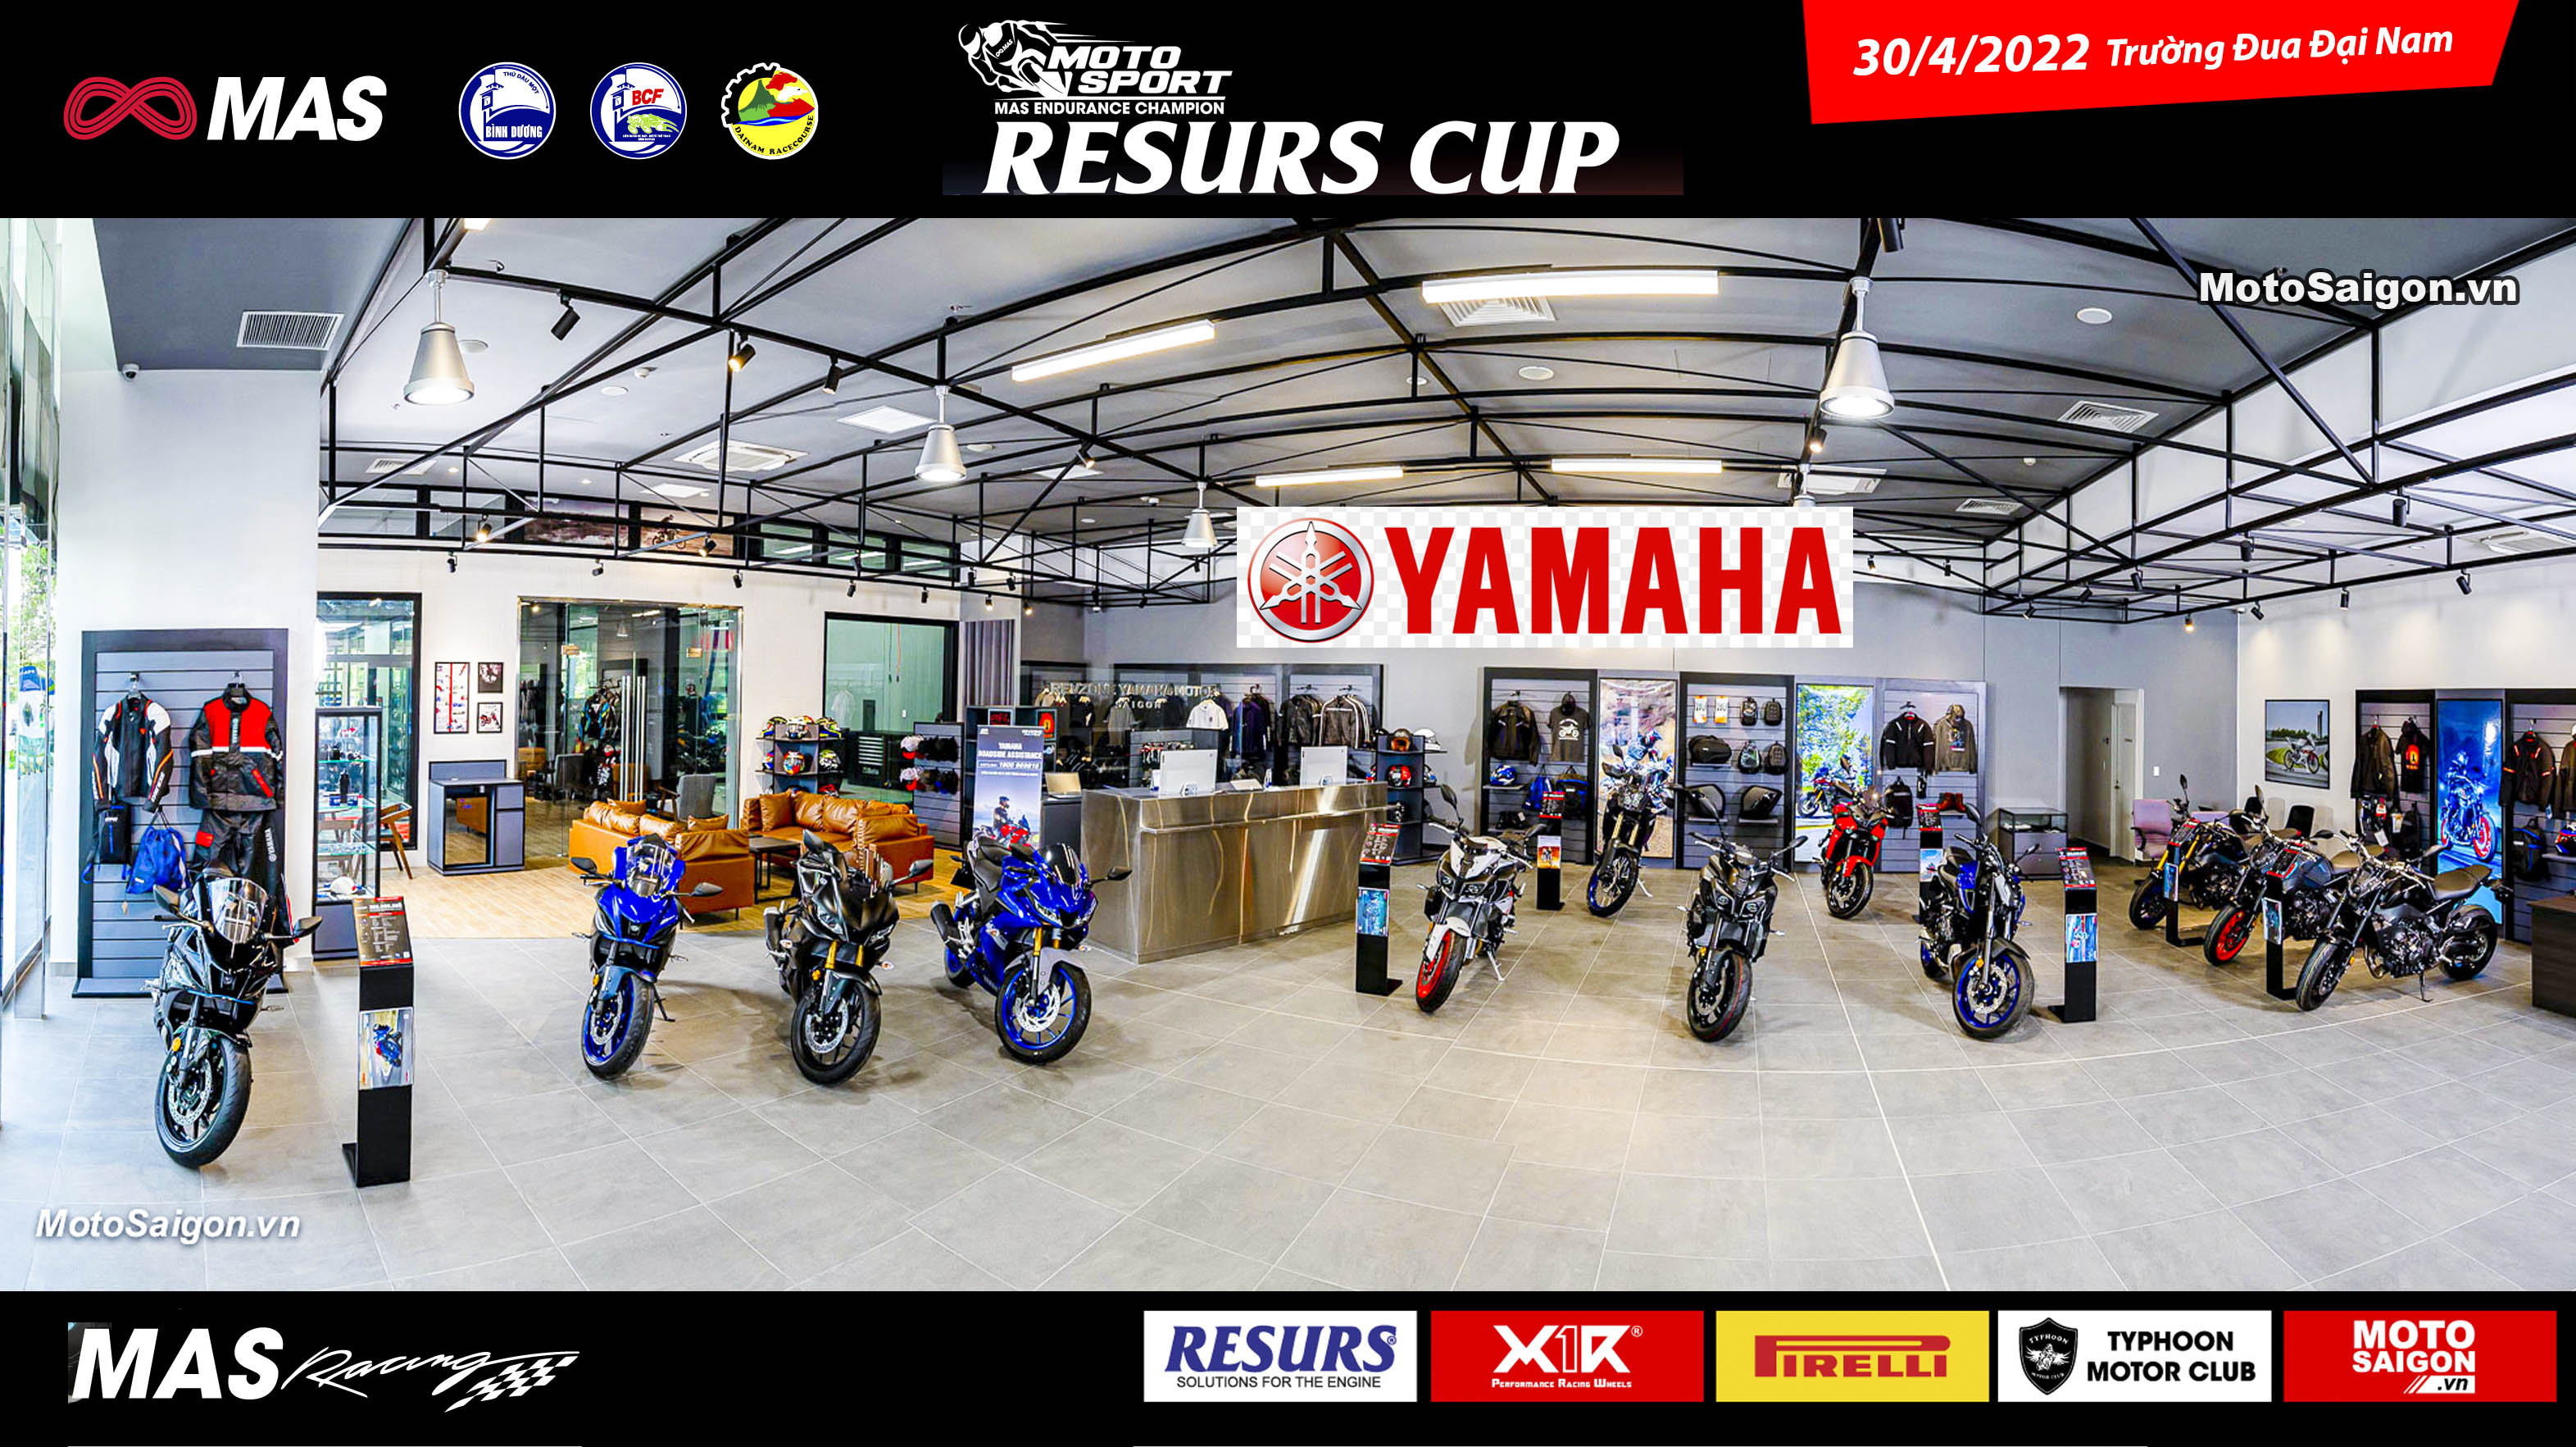 RESURS CUP - Yamaha Motor Việt Nam trưng bày các mẫu xe mới 2022 tại trường đua Đại Nam